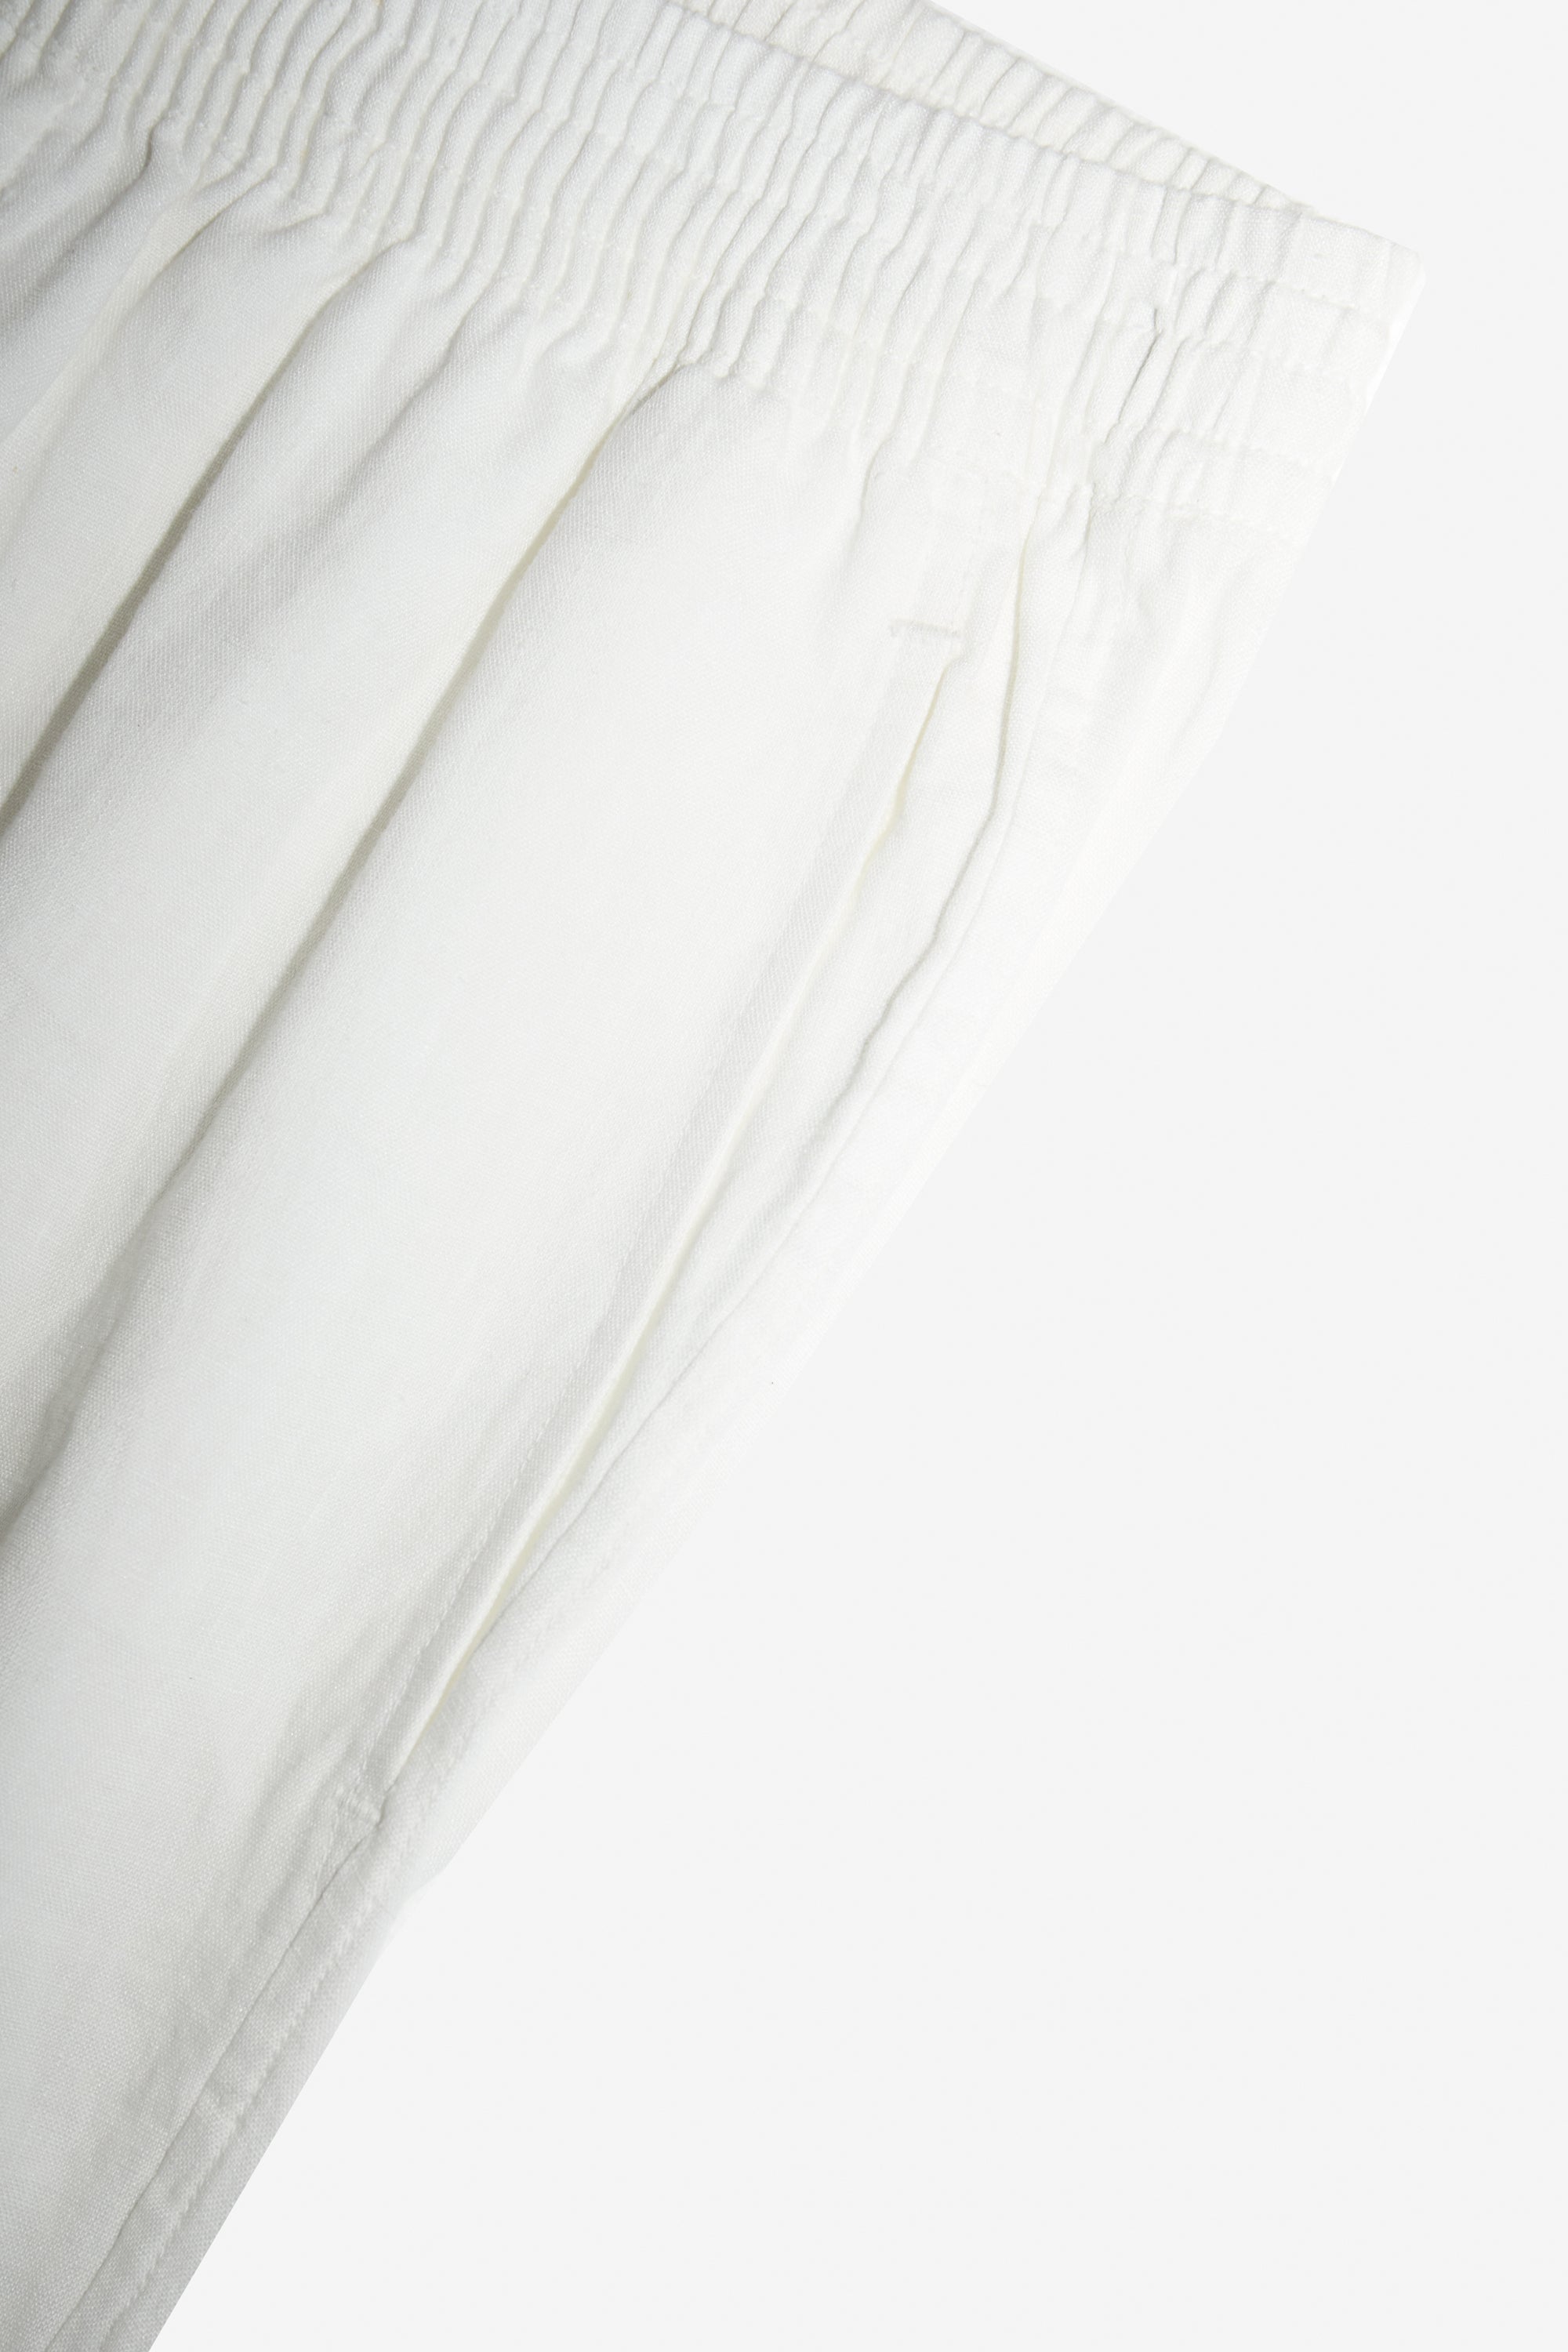 TerraFibre WHITE LINEN CLASSIC PANTS